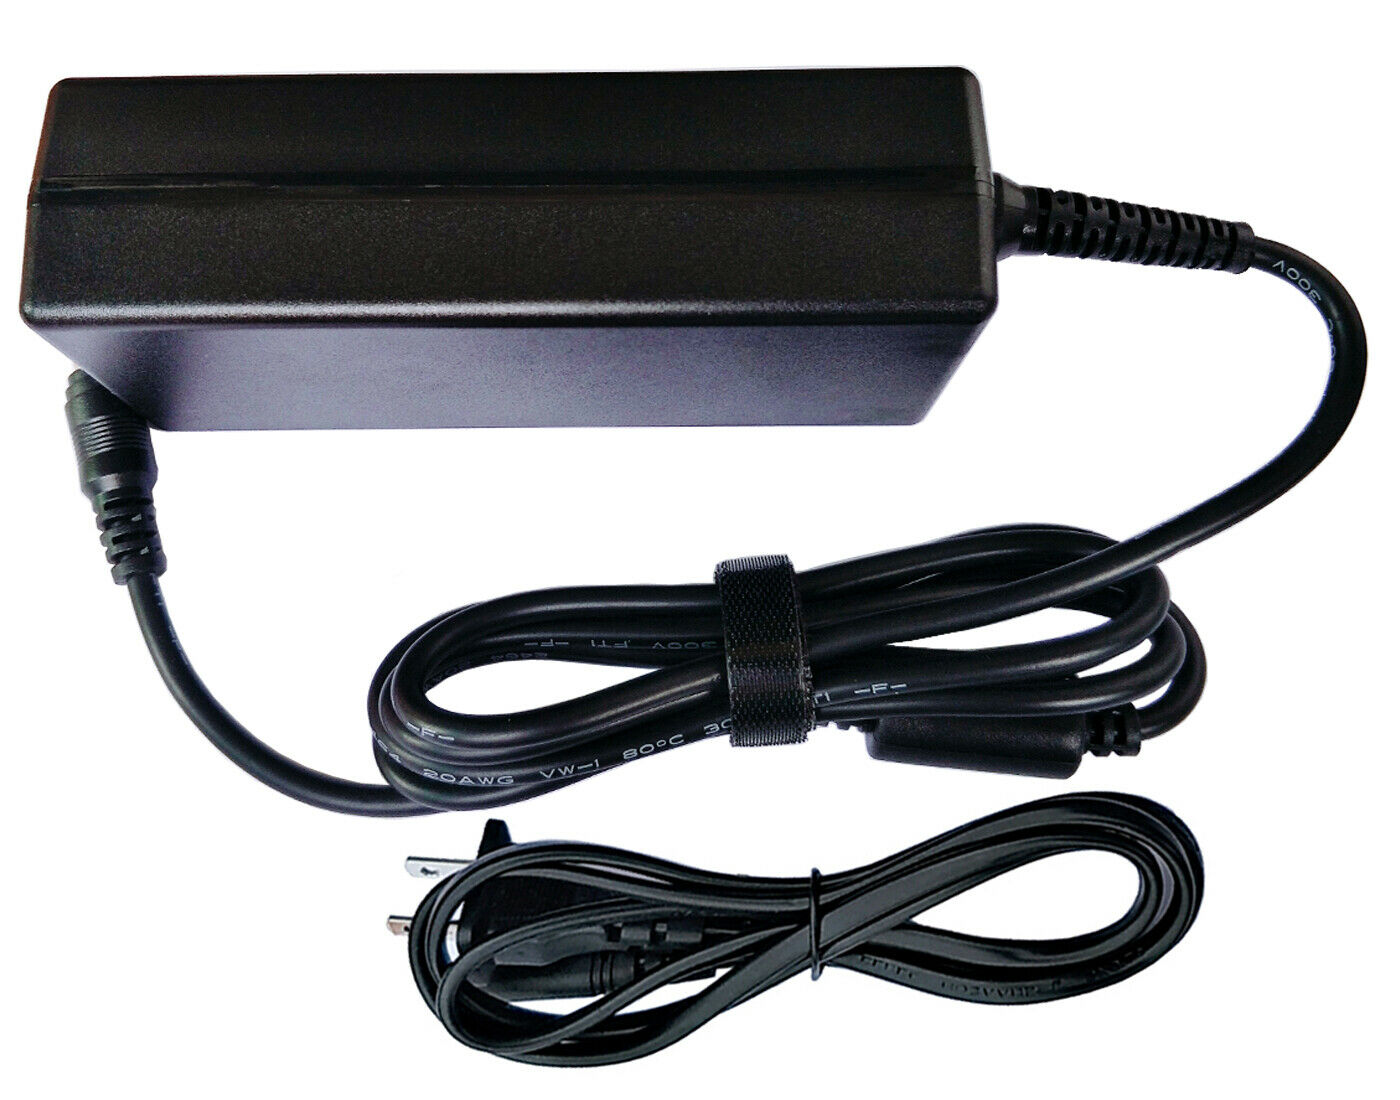 12V AC Adapter For Belkin F4U085 Thunderbolt 2 Express Dock HD F4U085TT F4U085VF Compatible Brand: